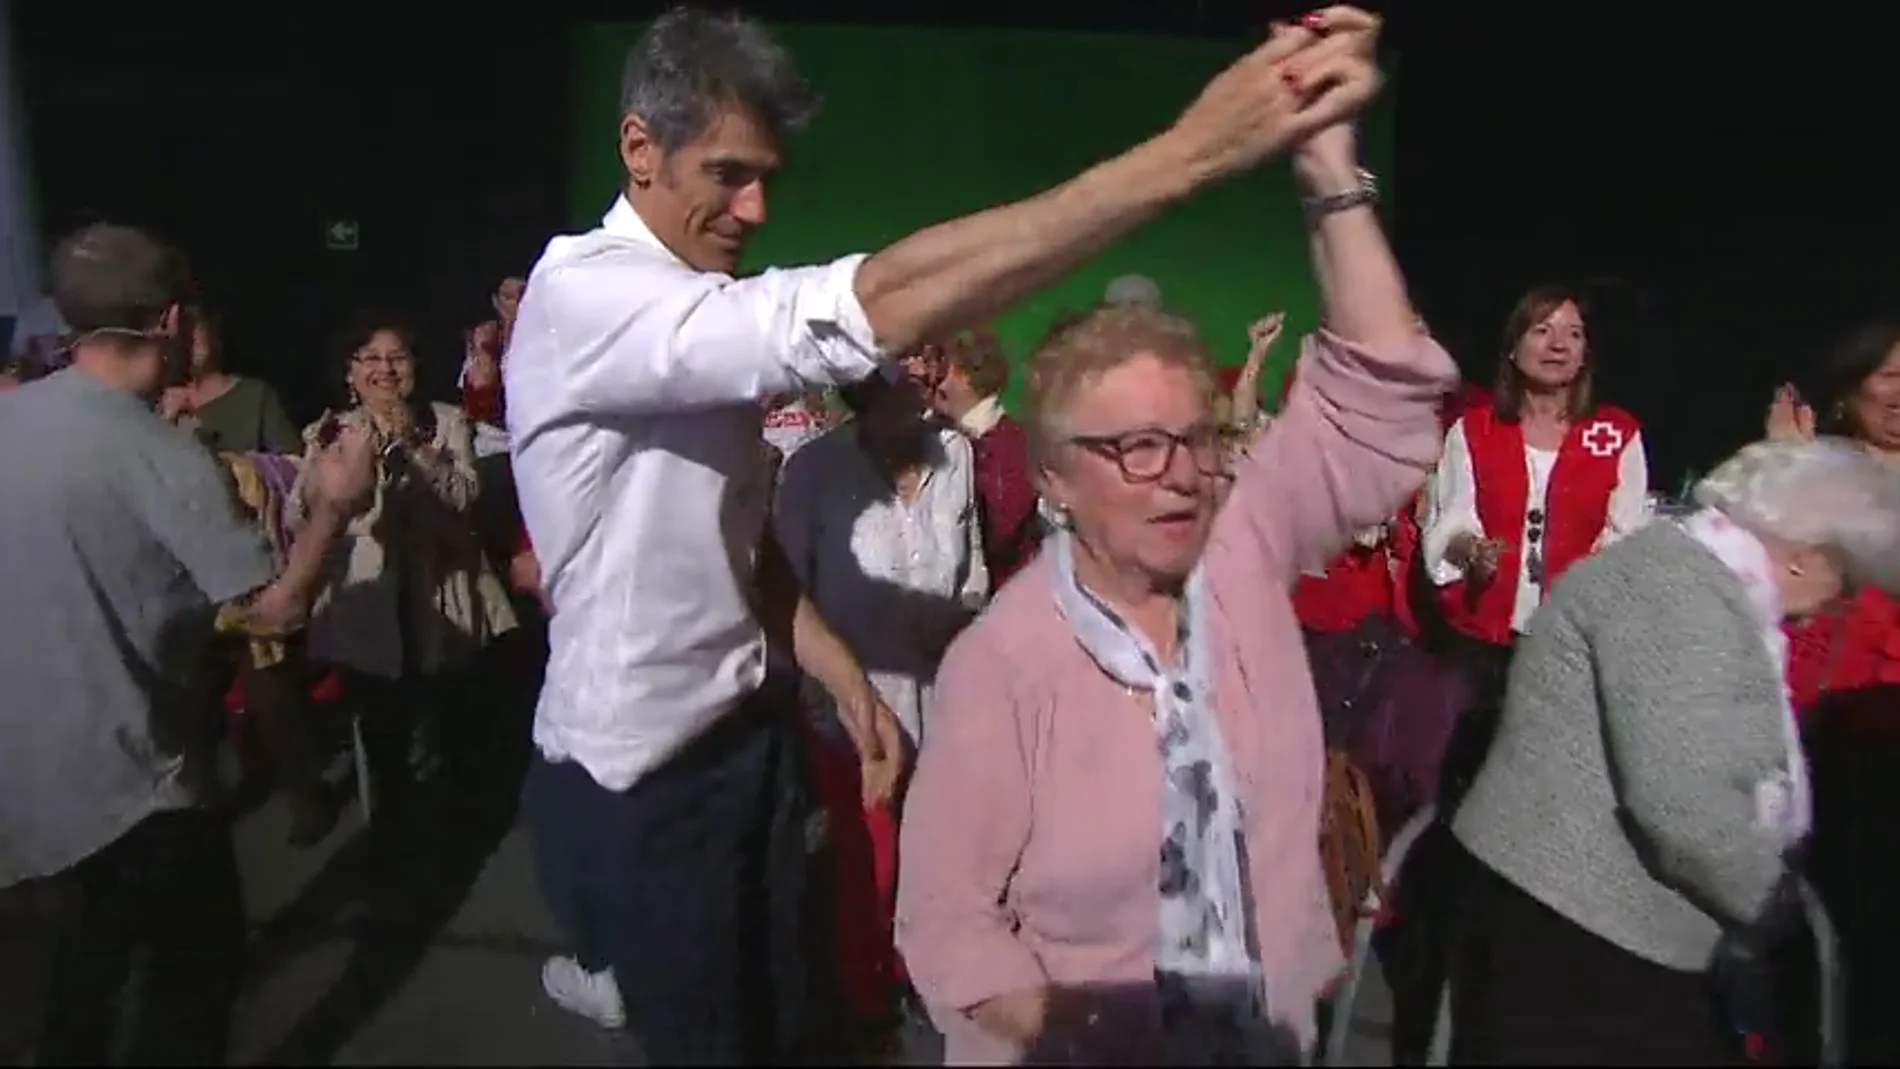 Jorge Fernández y Laura Moure se marcan un baile con su público más especial